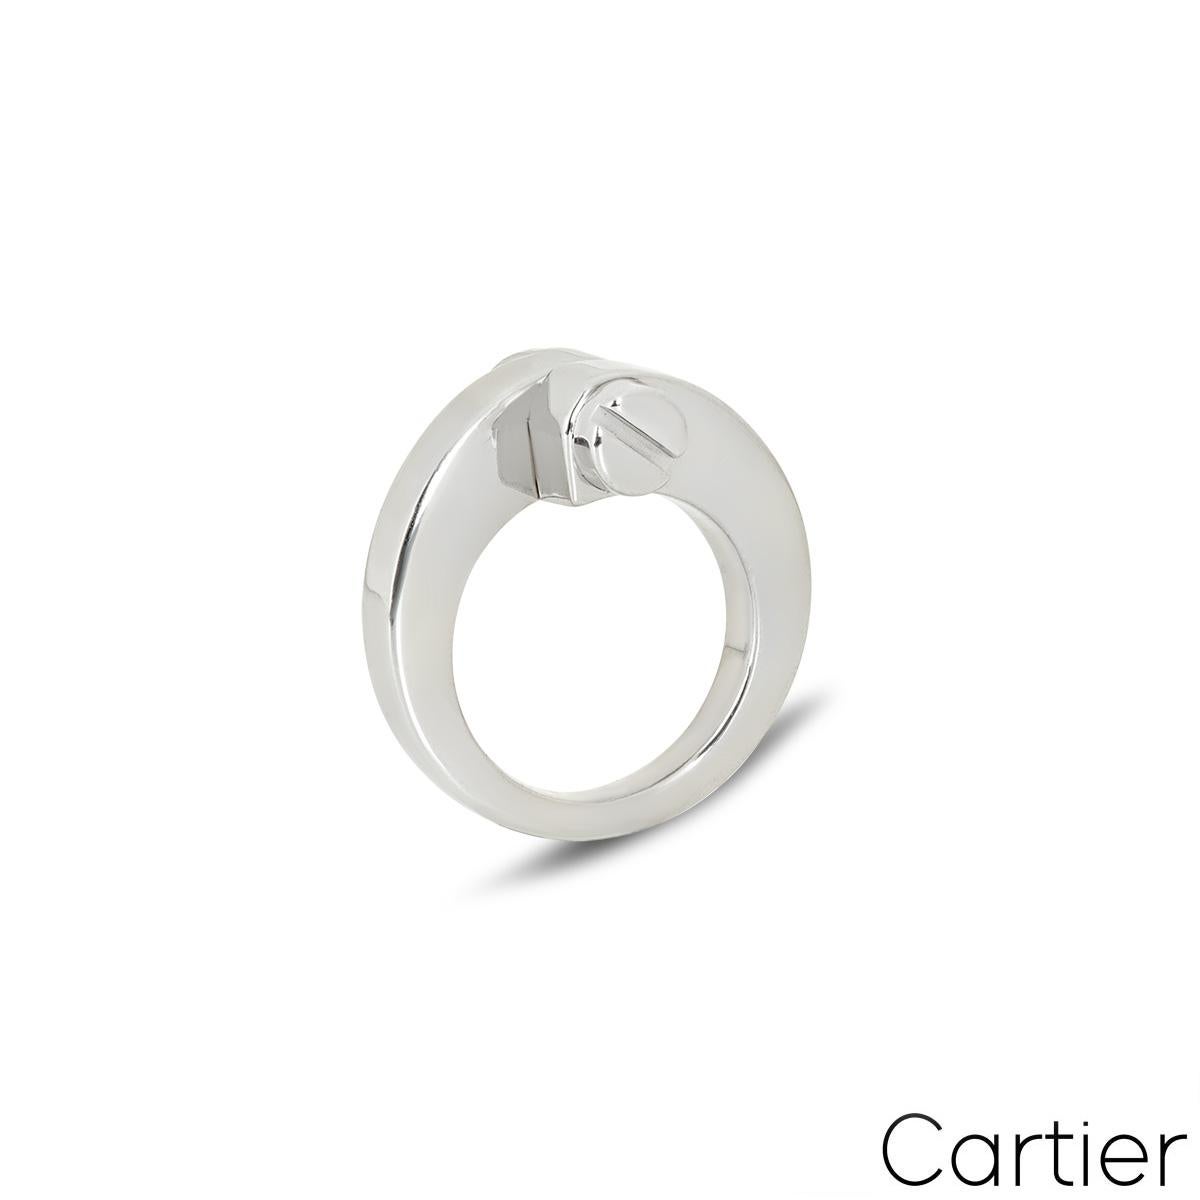 Bague Cartier en or blanc 18 carats de la collection Menotte, très tendance. L'anneau présente deux terminaisons à vis au centre. La bague se rétrécit de 11 mm à 3 mm, correspond à la taille I du Royaume-Uni, à la taille 4,25 des États-Unis ou à la